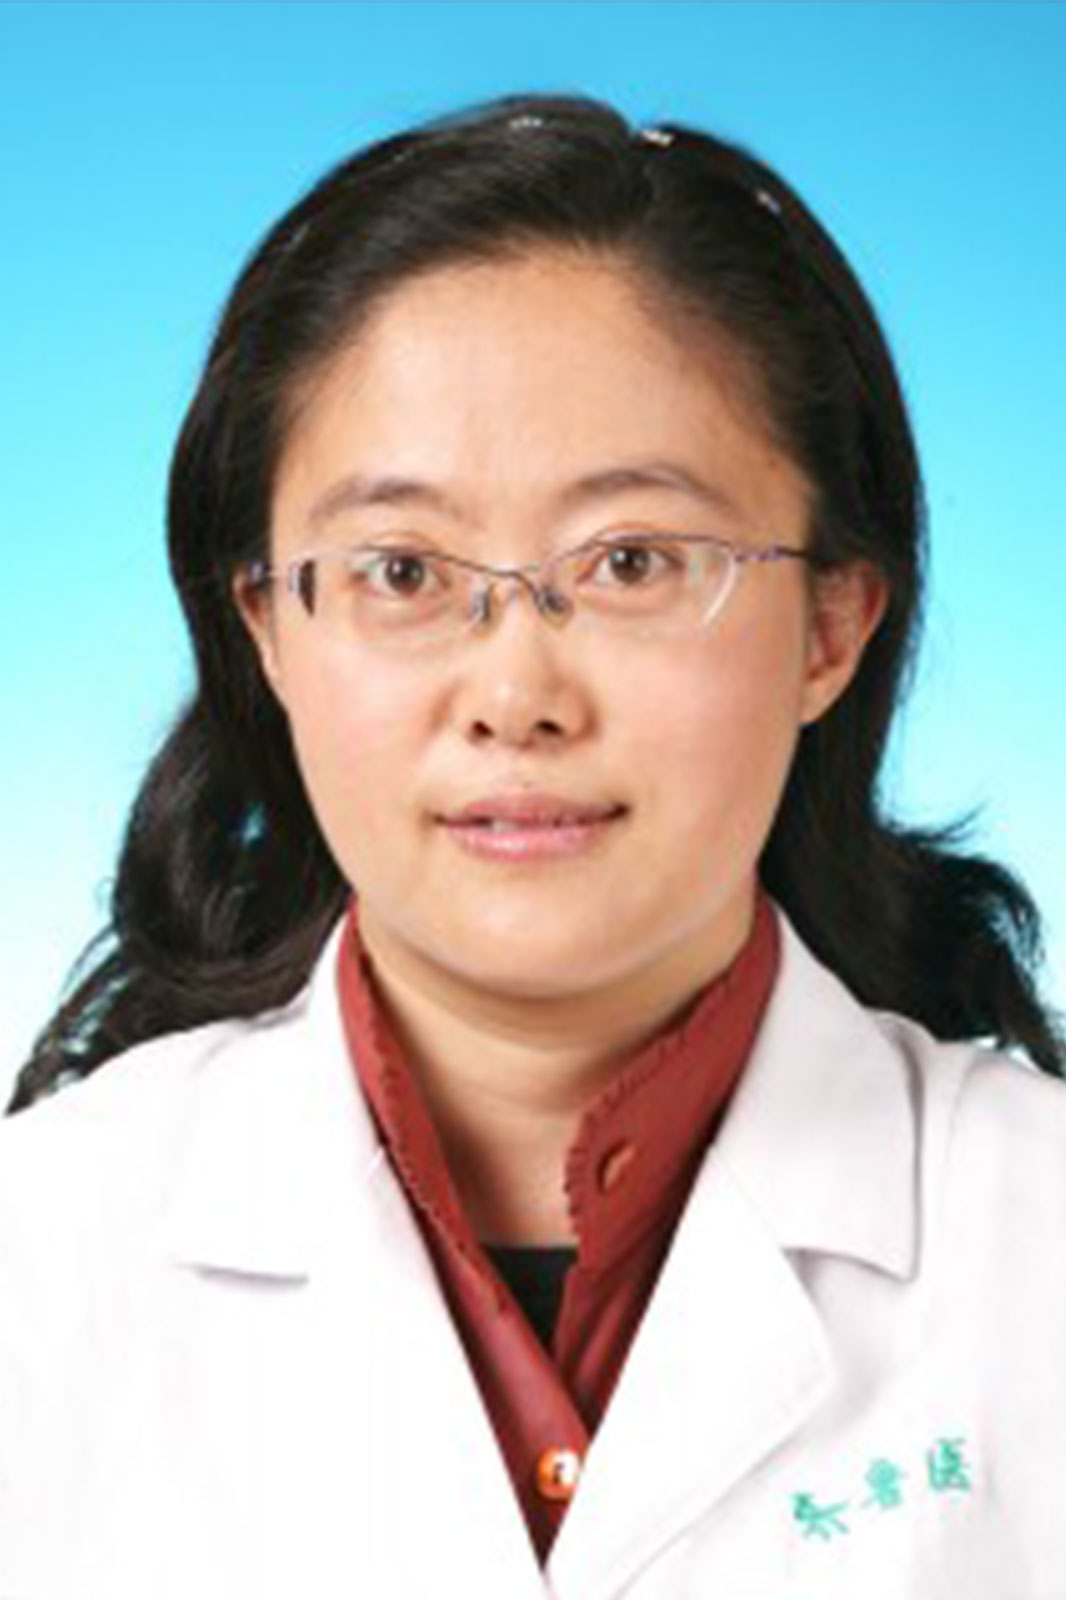 Yuzhu Li